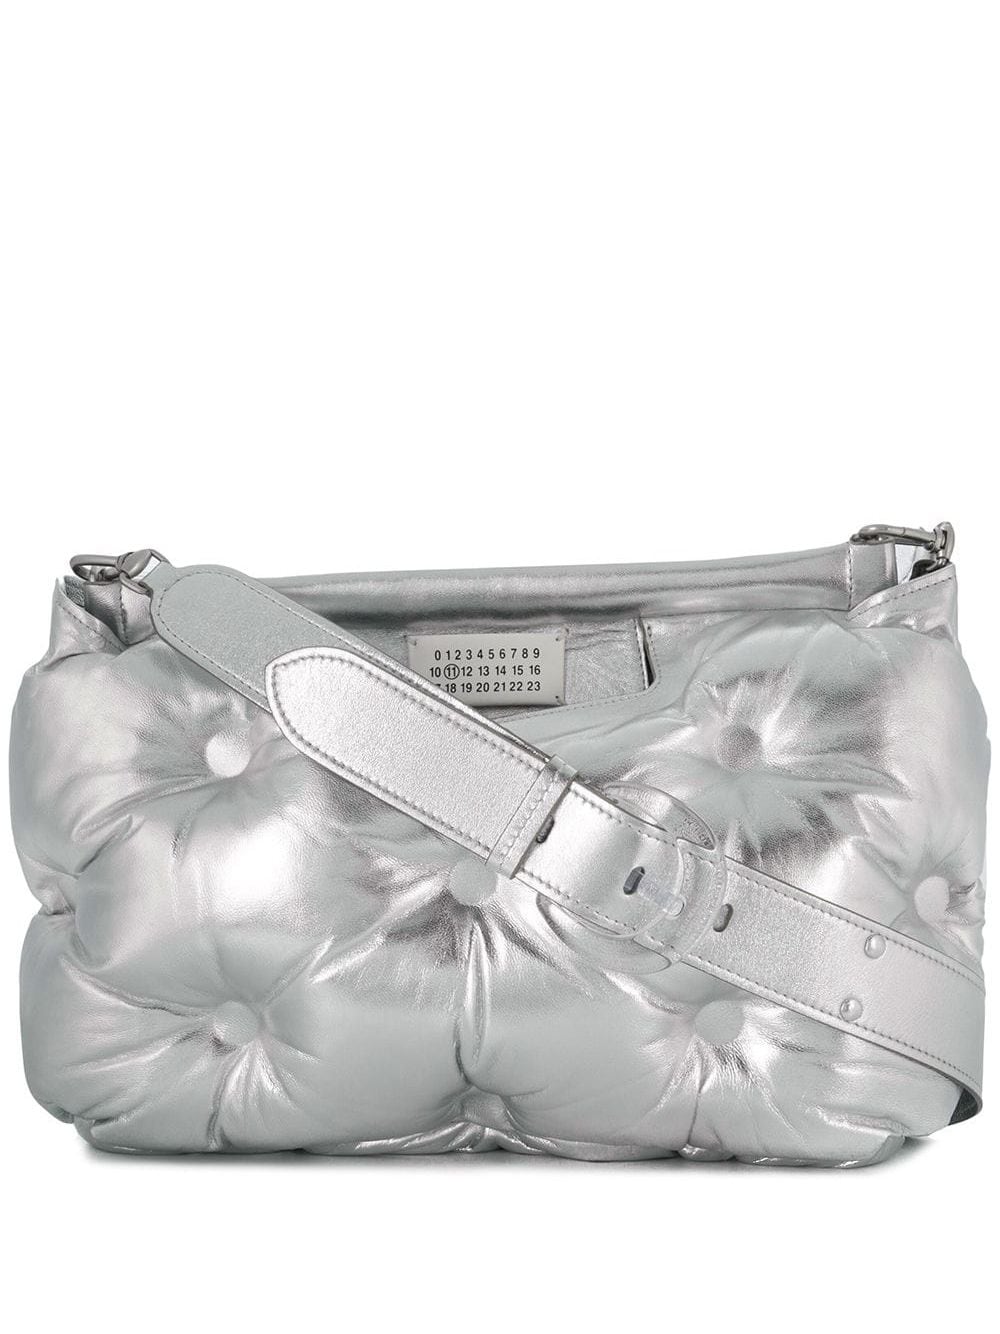 фото Maison margiela объемная сумка glam slam